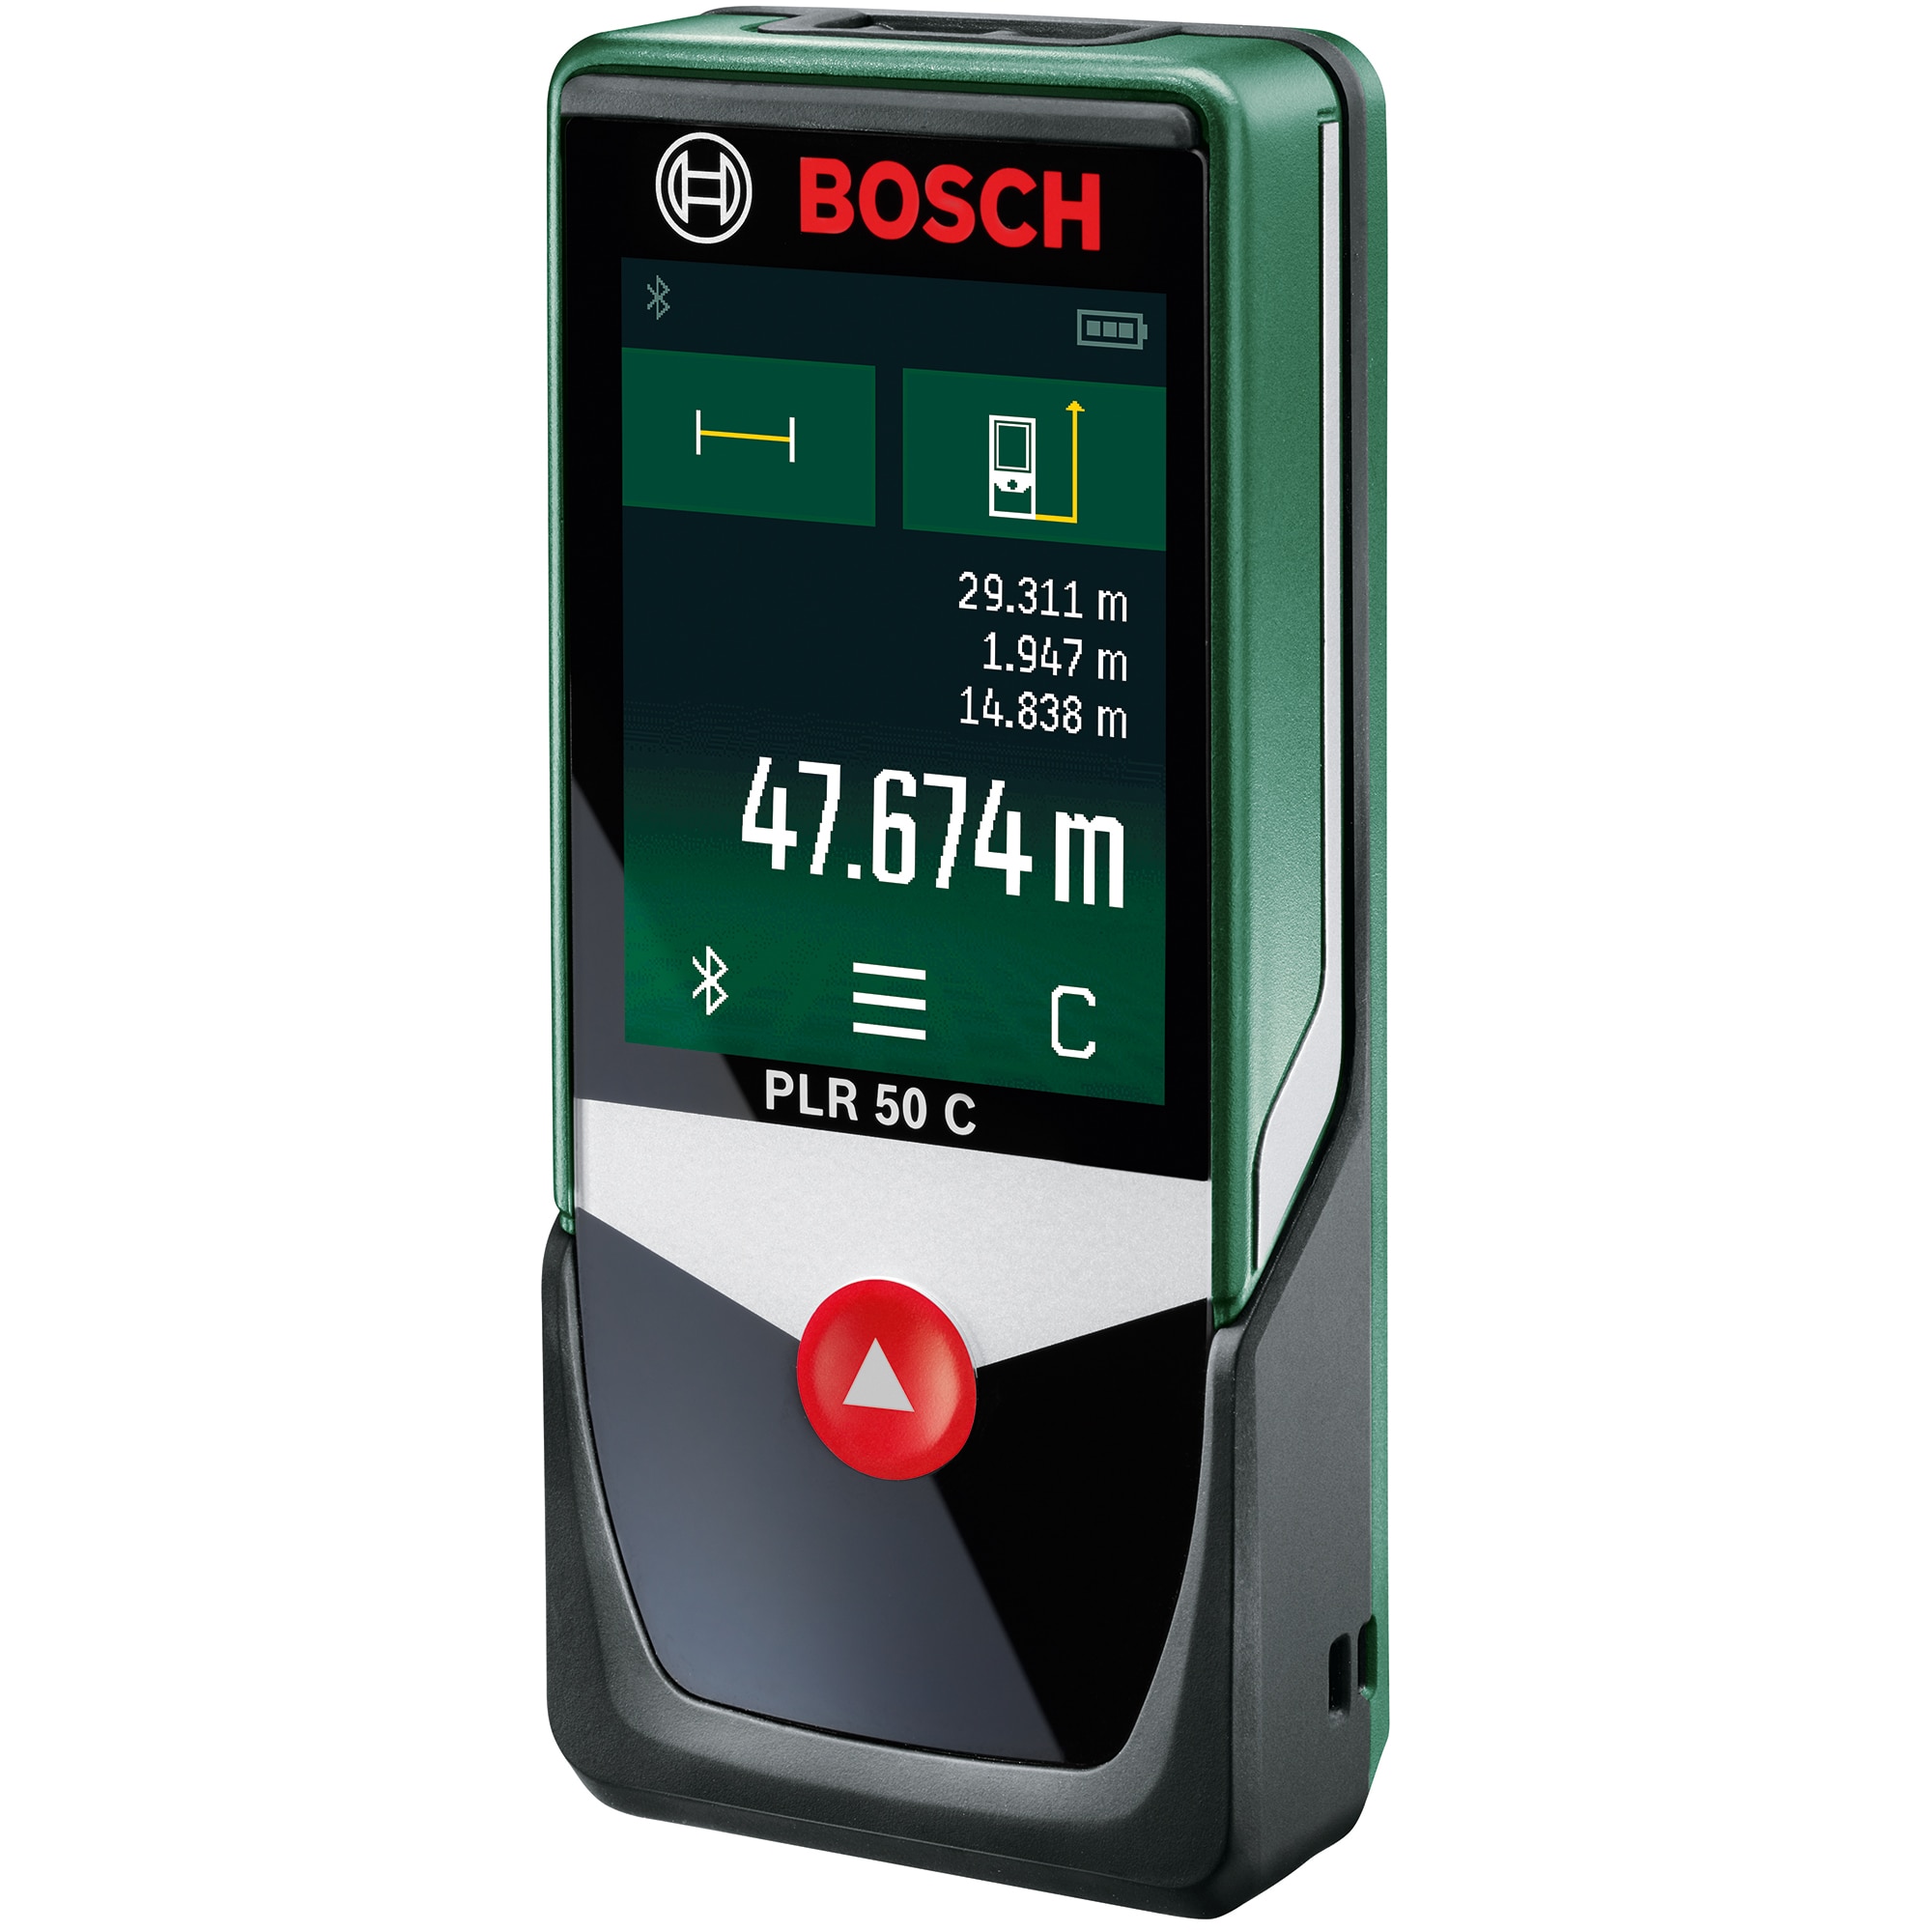 Bosch 50 c. Лазерная Рулетка Bosch PLR 50. Дальномеры Bosch PLR 30 C. Bosch PLR 50 C 0603672220. Дальномер Bosch Bosch PLR 50 C.